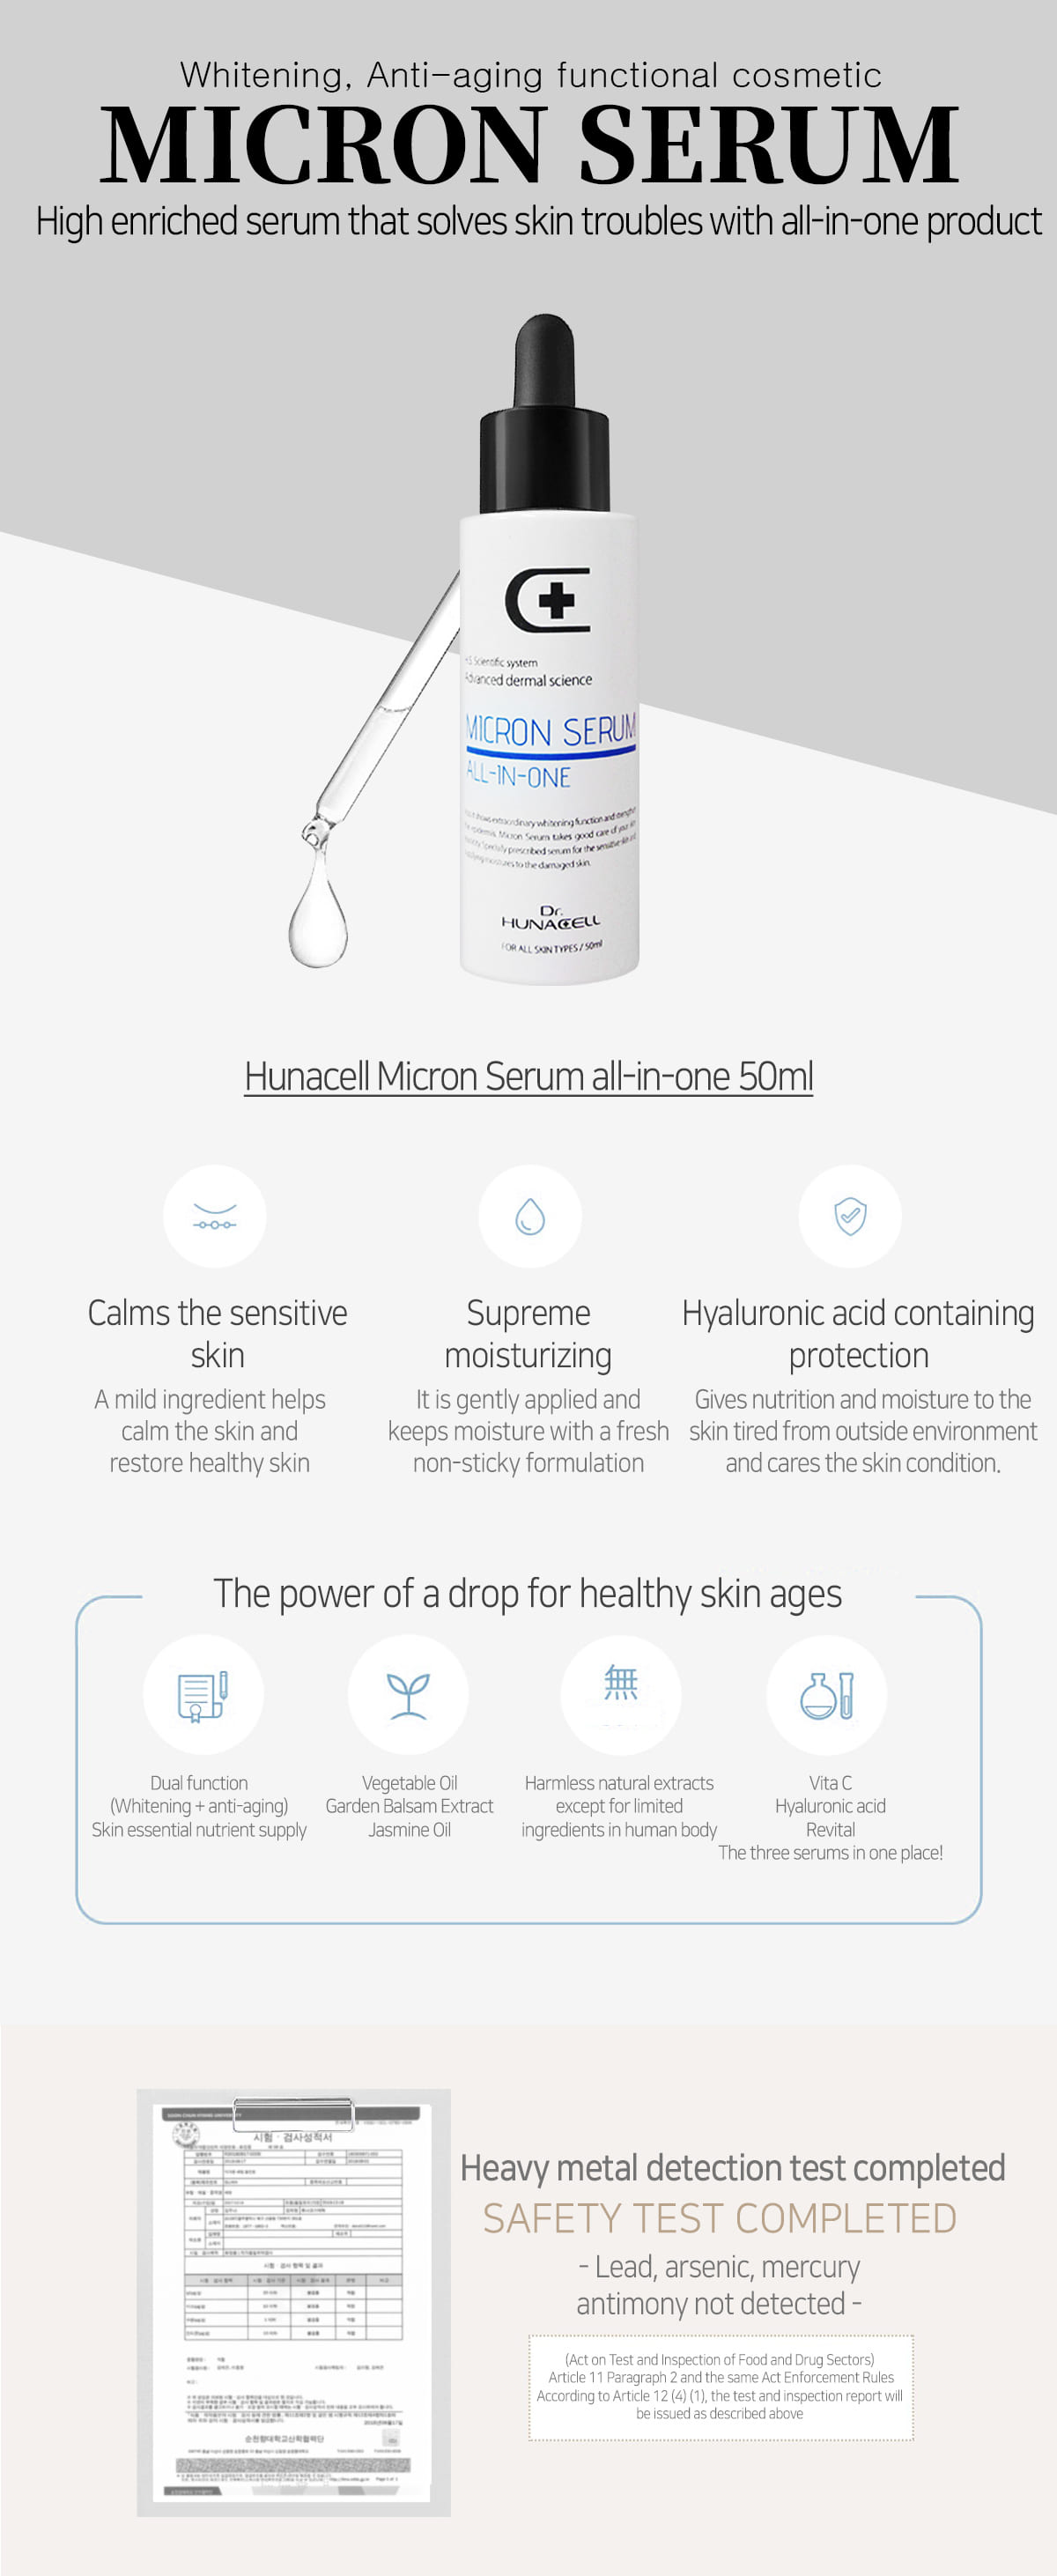 Micron serum all in one 50ml Skin care  Moisturizing  Serum  hunacell  All-in-one  All-In-One Serum  essence  Whitening Serum  Whitening effect